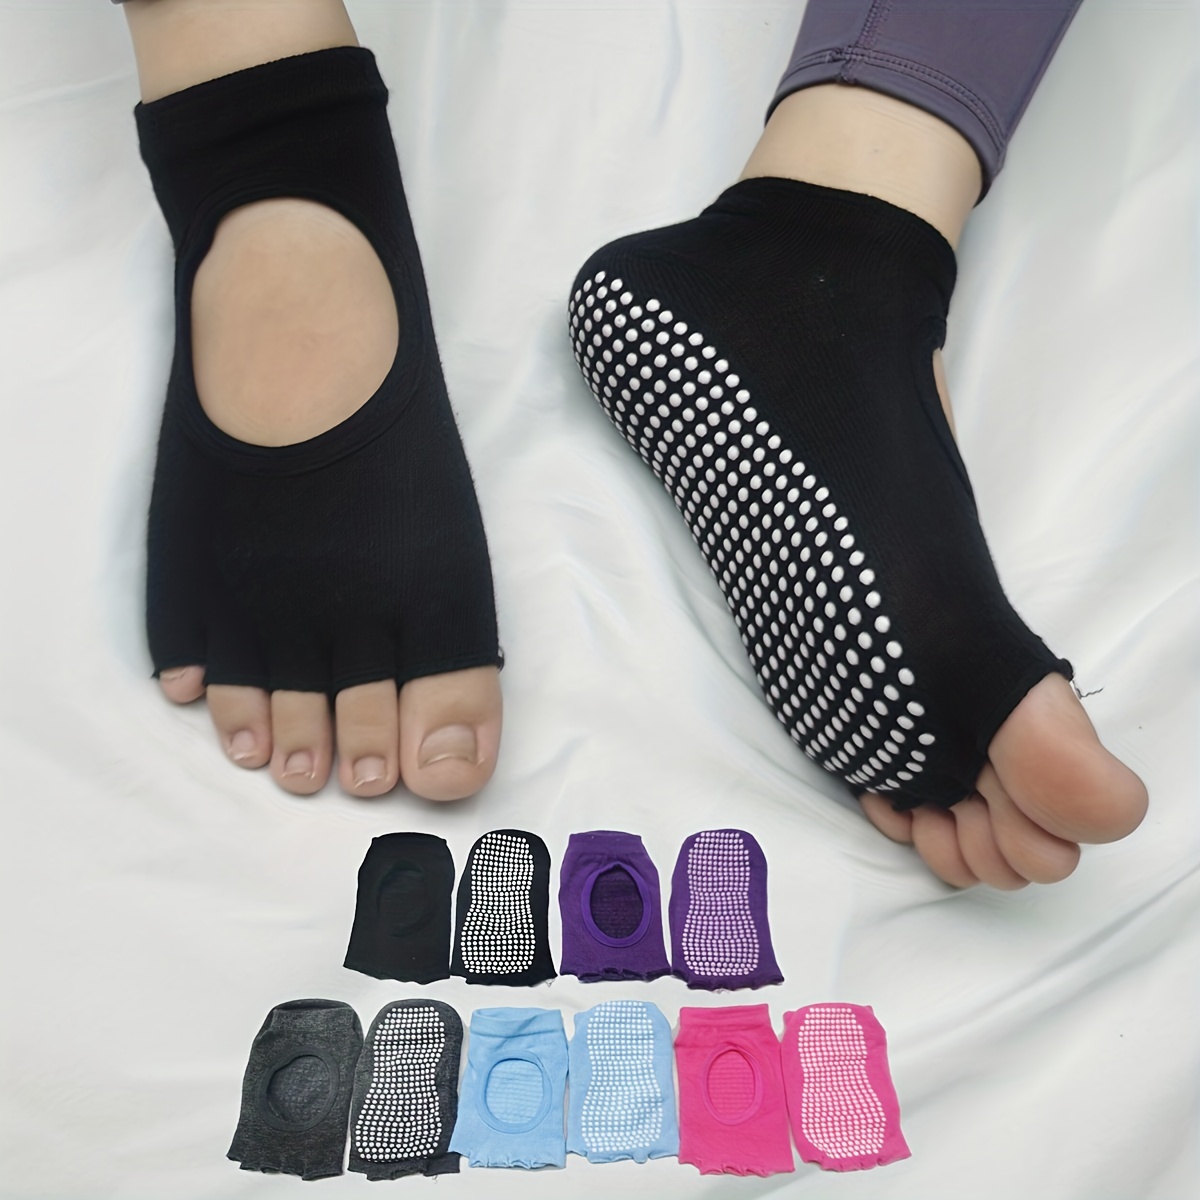 4 Pairs Toeless Yoga Socks Non-Slip Grips for Pilates Ballet Dance